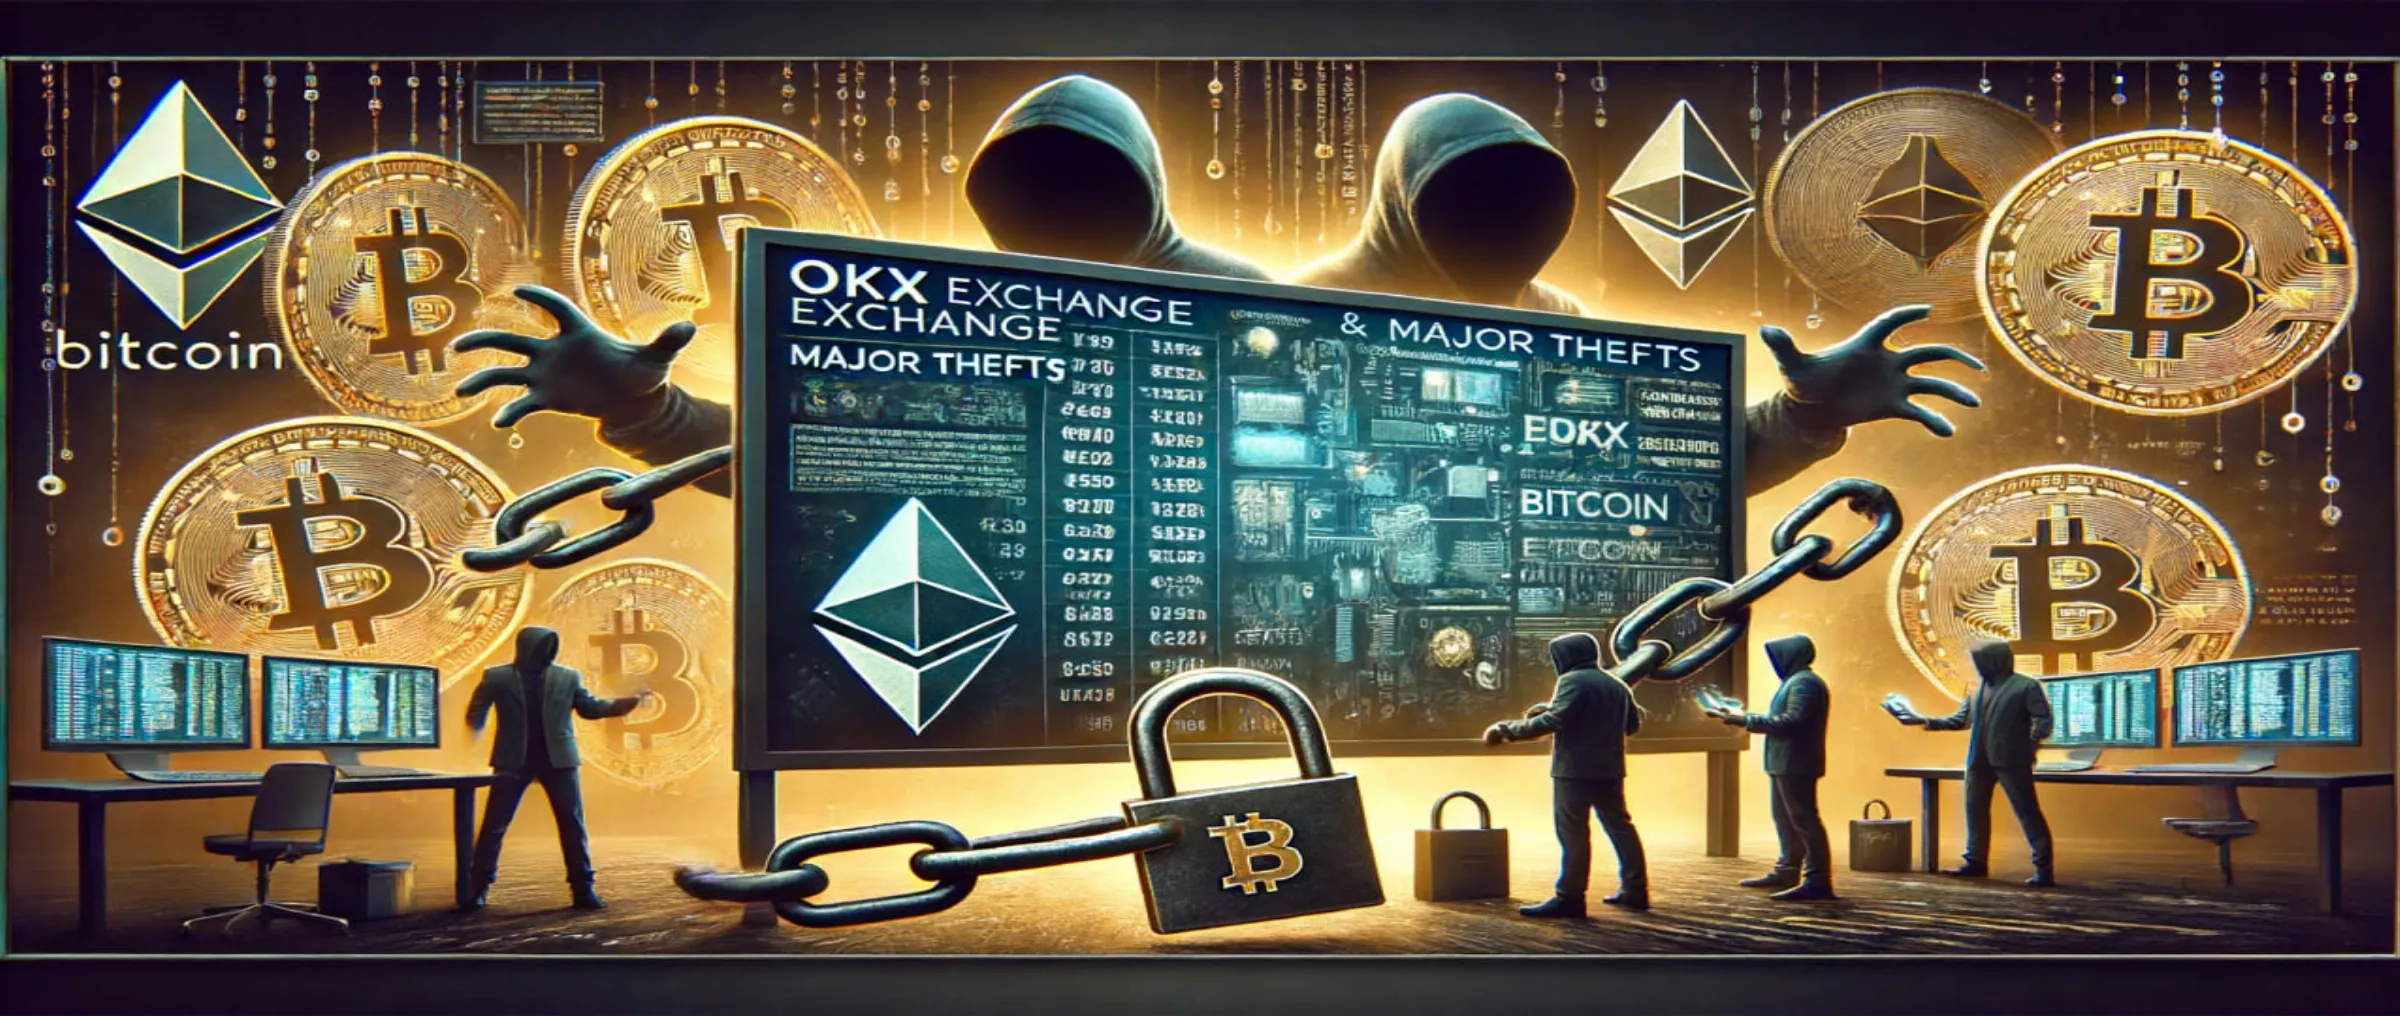 OKX battles multimillion-dollar thefts after SIM-swap attacks